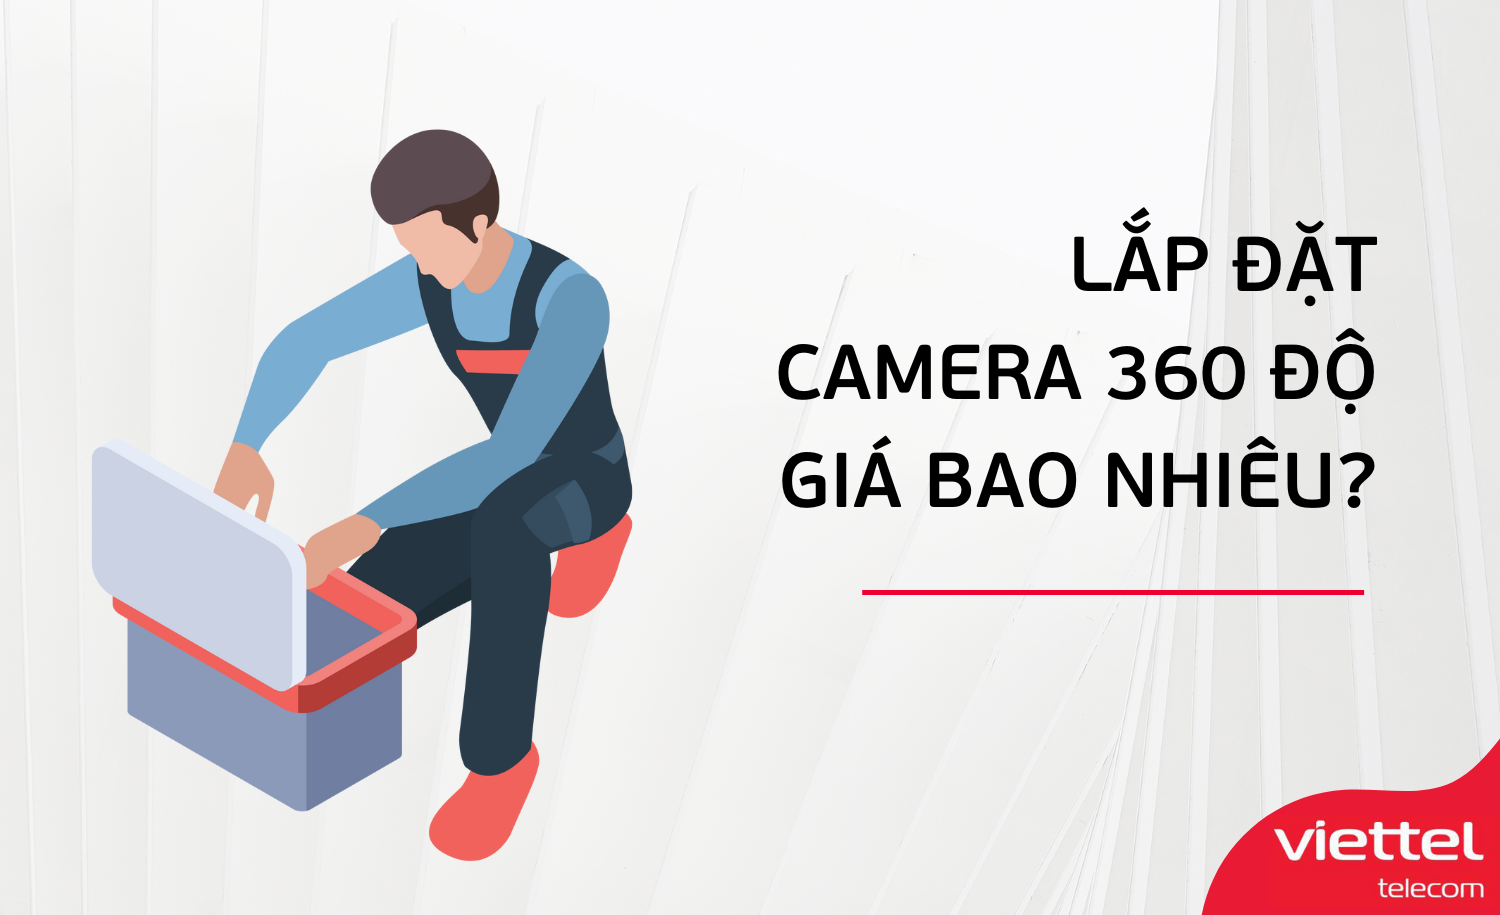 Lắp đặt Camera 360 độ giá bao nhiêu?